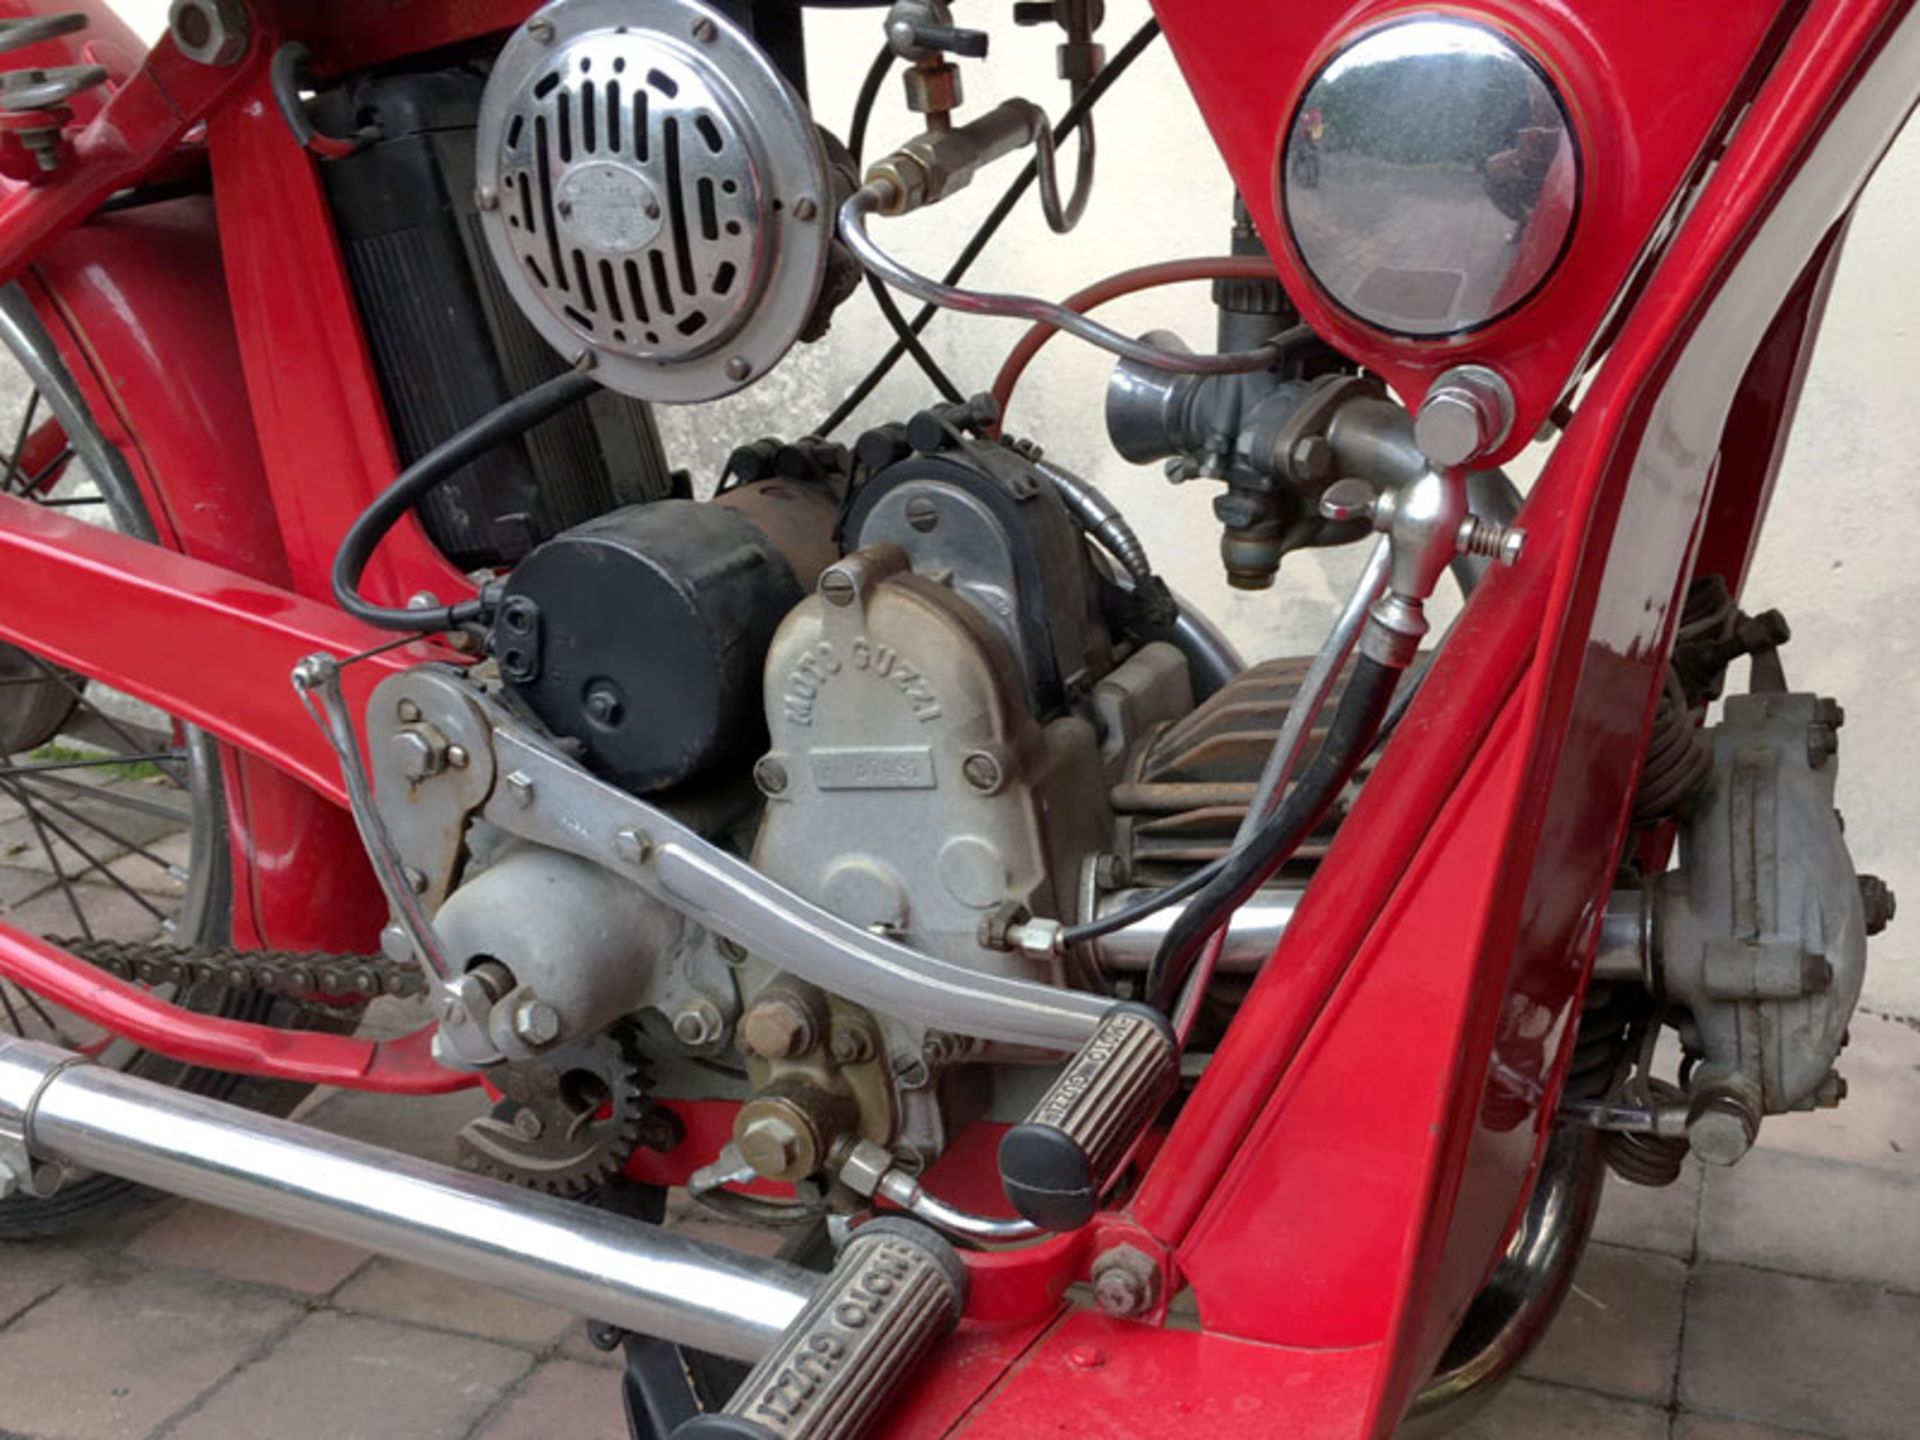 1939 Moto Guzzi Egretta - Image 3 of 4